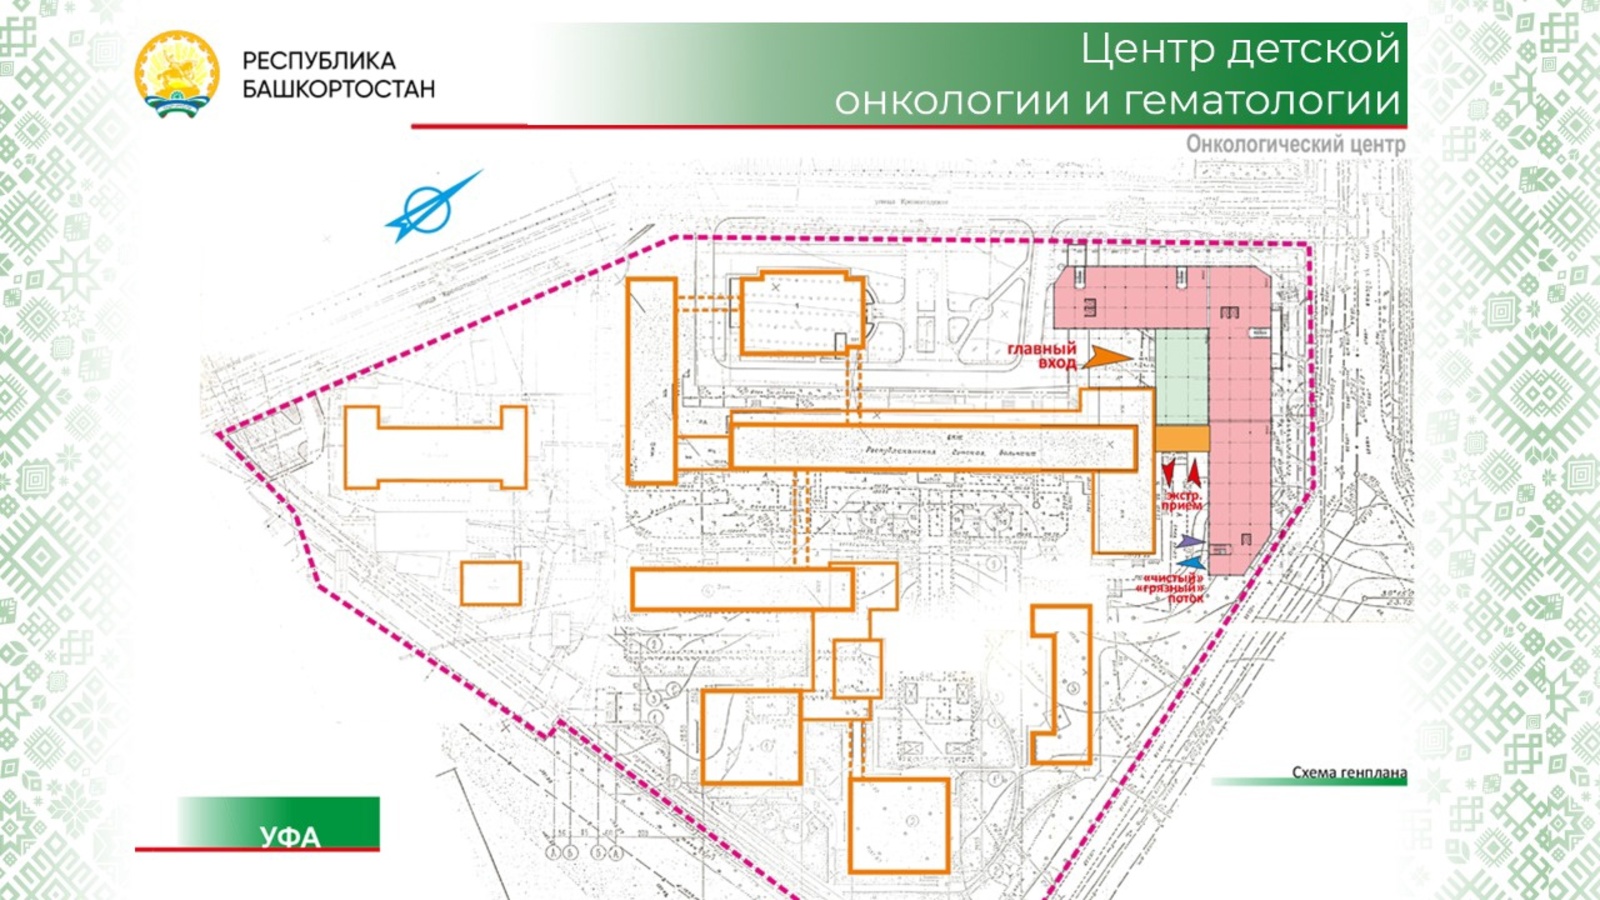 В Уфе начинается строительство центра детской онкологии и гематологии – Радий Хабиров